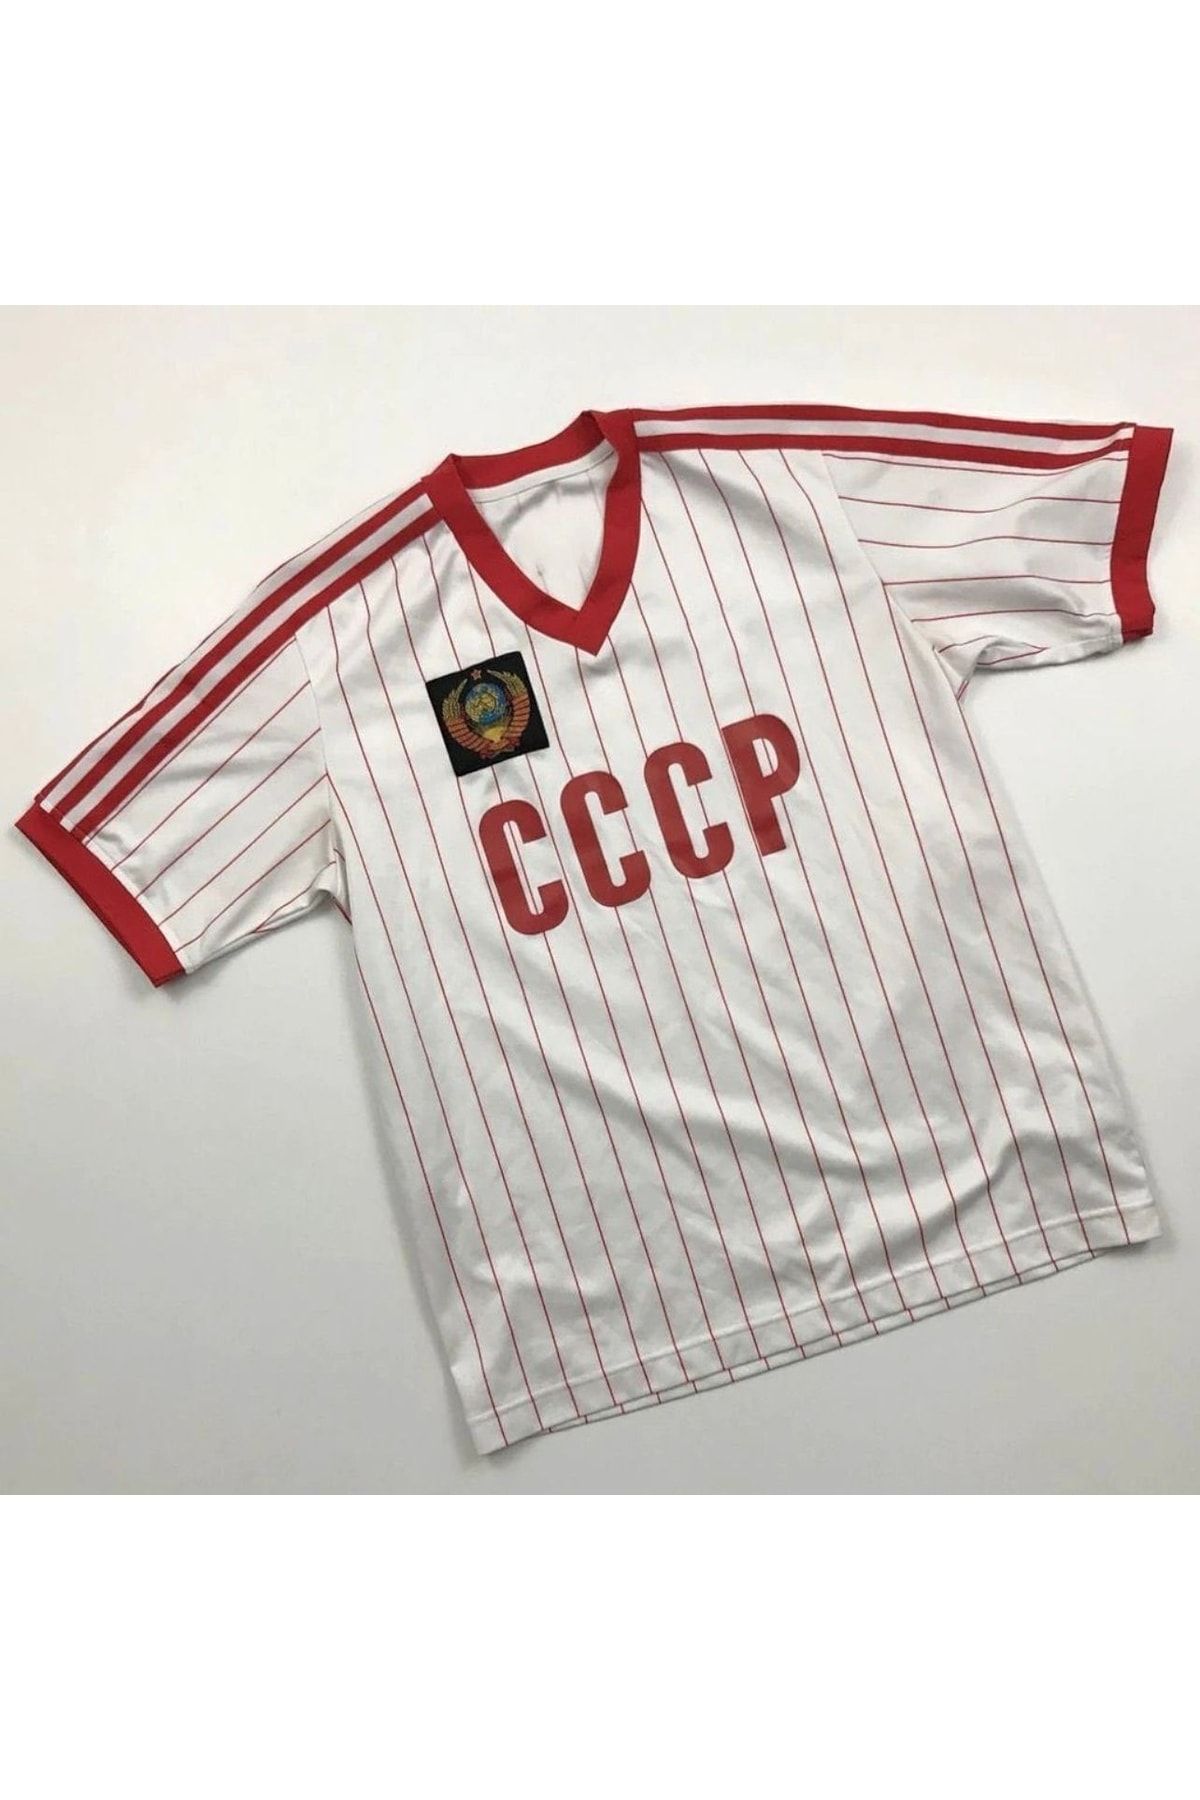 Pasxaspor Cio Nostalji Cccp Sovyet Retro Forma Modeli